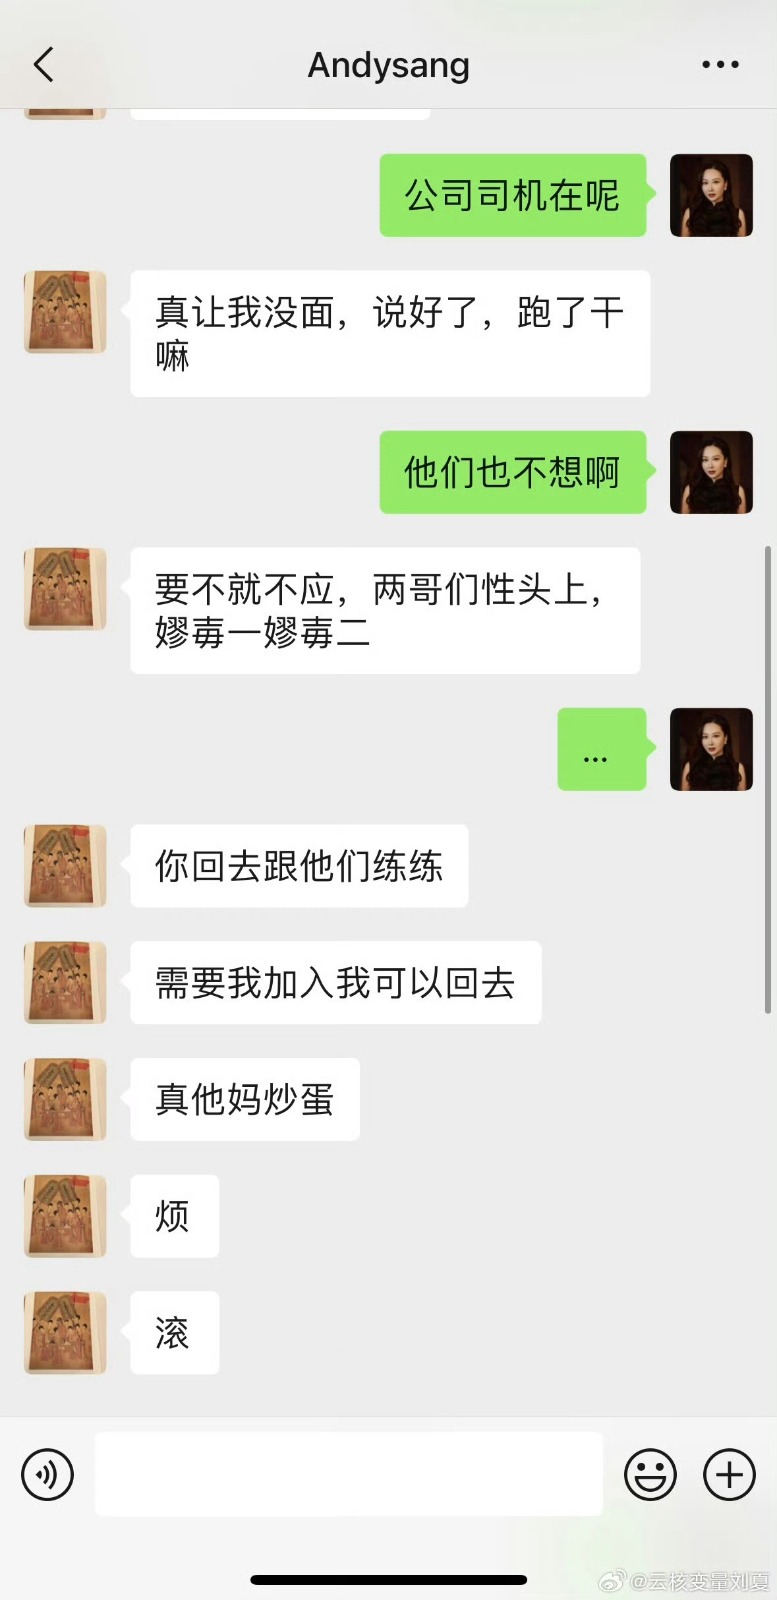 被曝光的聊天记录中，刘夏以「他们也不想」为由拒绝了。